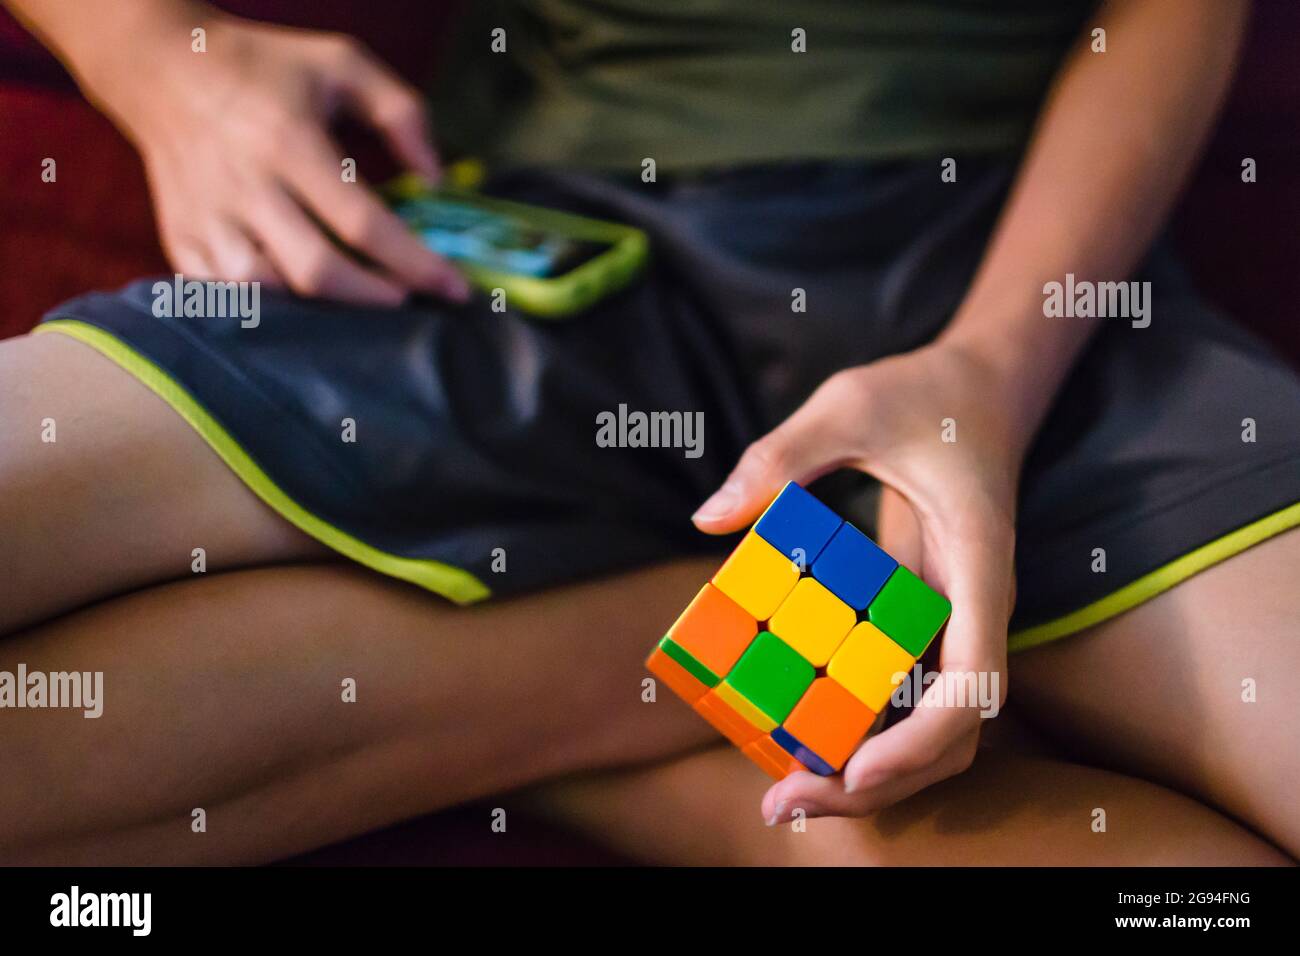 Un jeune adolescent asiatique joue avec un cube de casse-tête et un téléphone Banque D'Images